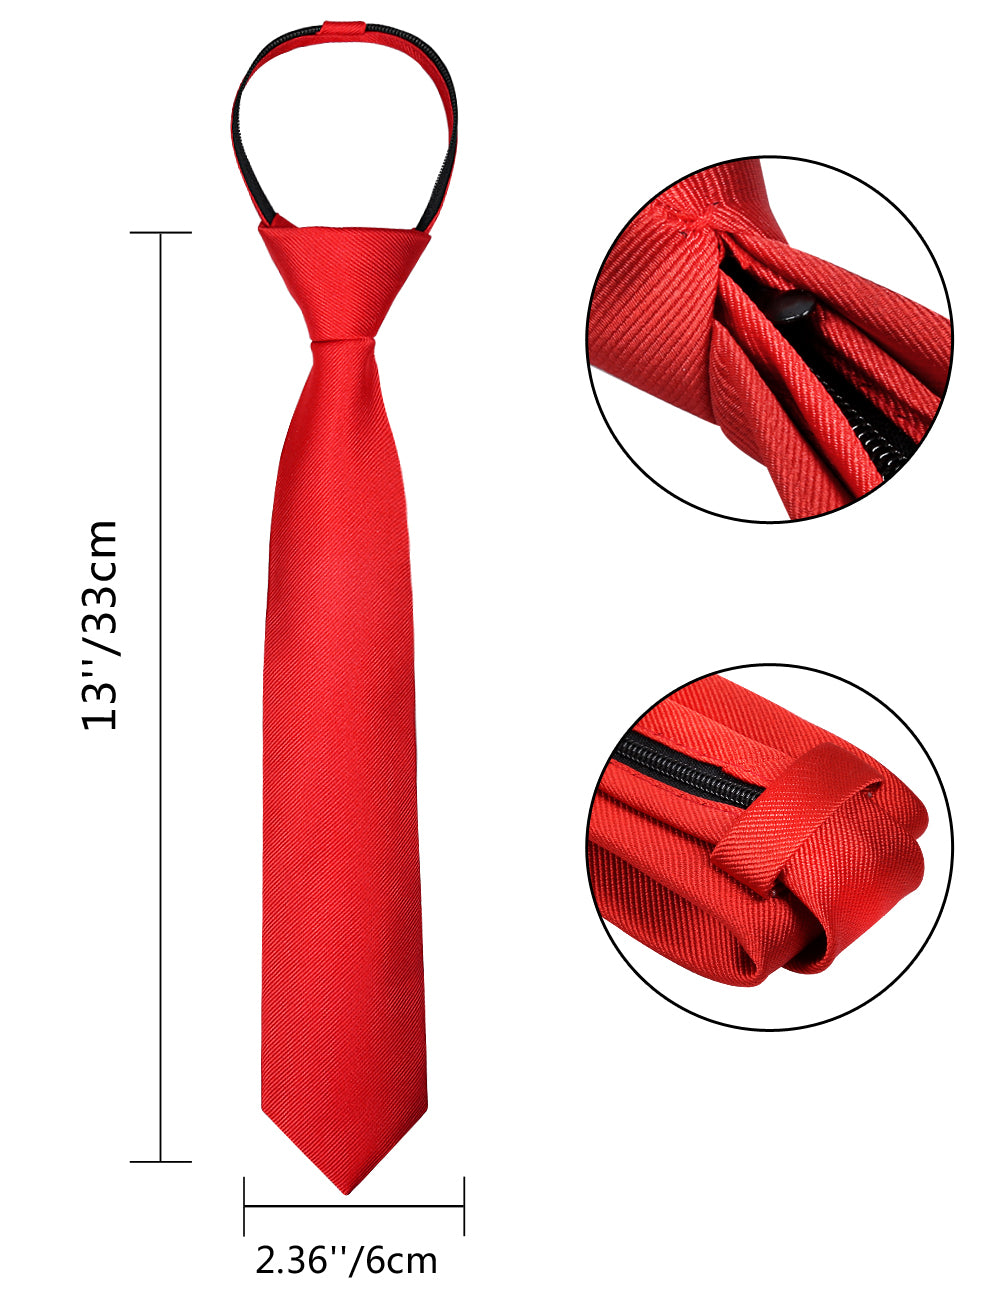 Boy's Solid Color Pre-tied 2.4'' Zipper Skinny Necktie #067